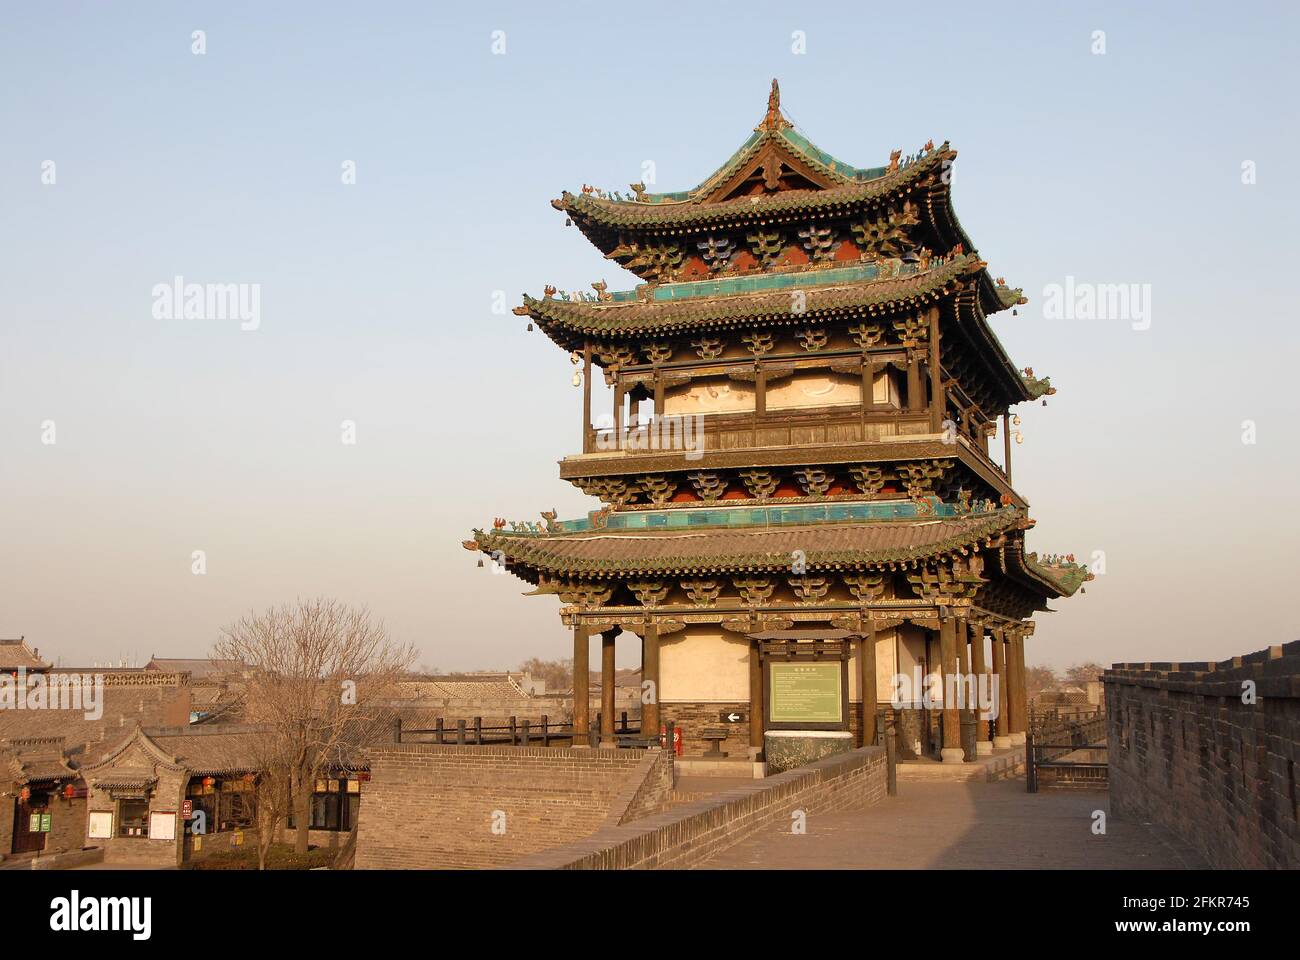 Pingyao dans la province du Shanxi, Chine. La tour de la porte sud de Pingyao mur de la ville vu dans le soleil du soir. Banque D'Images